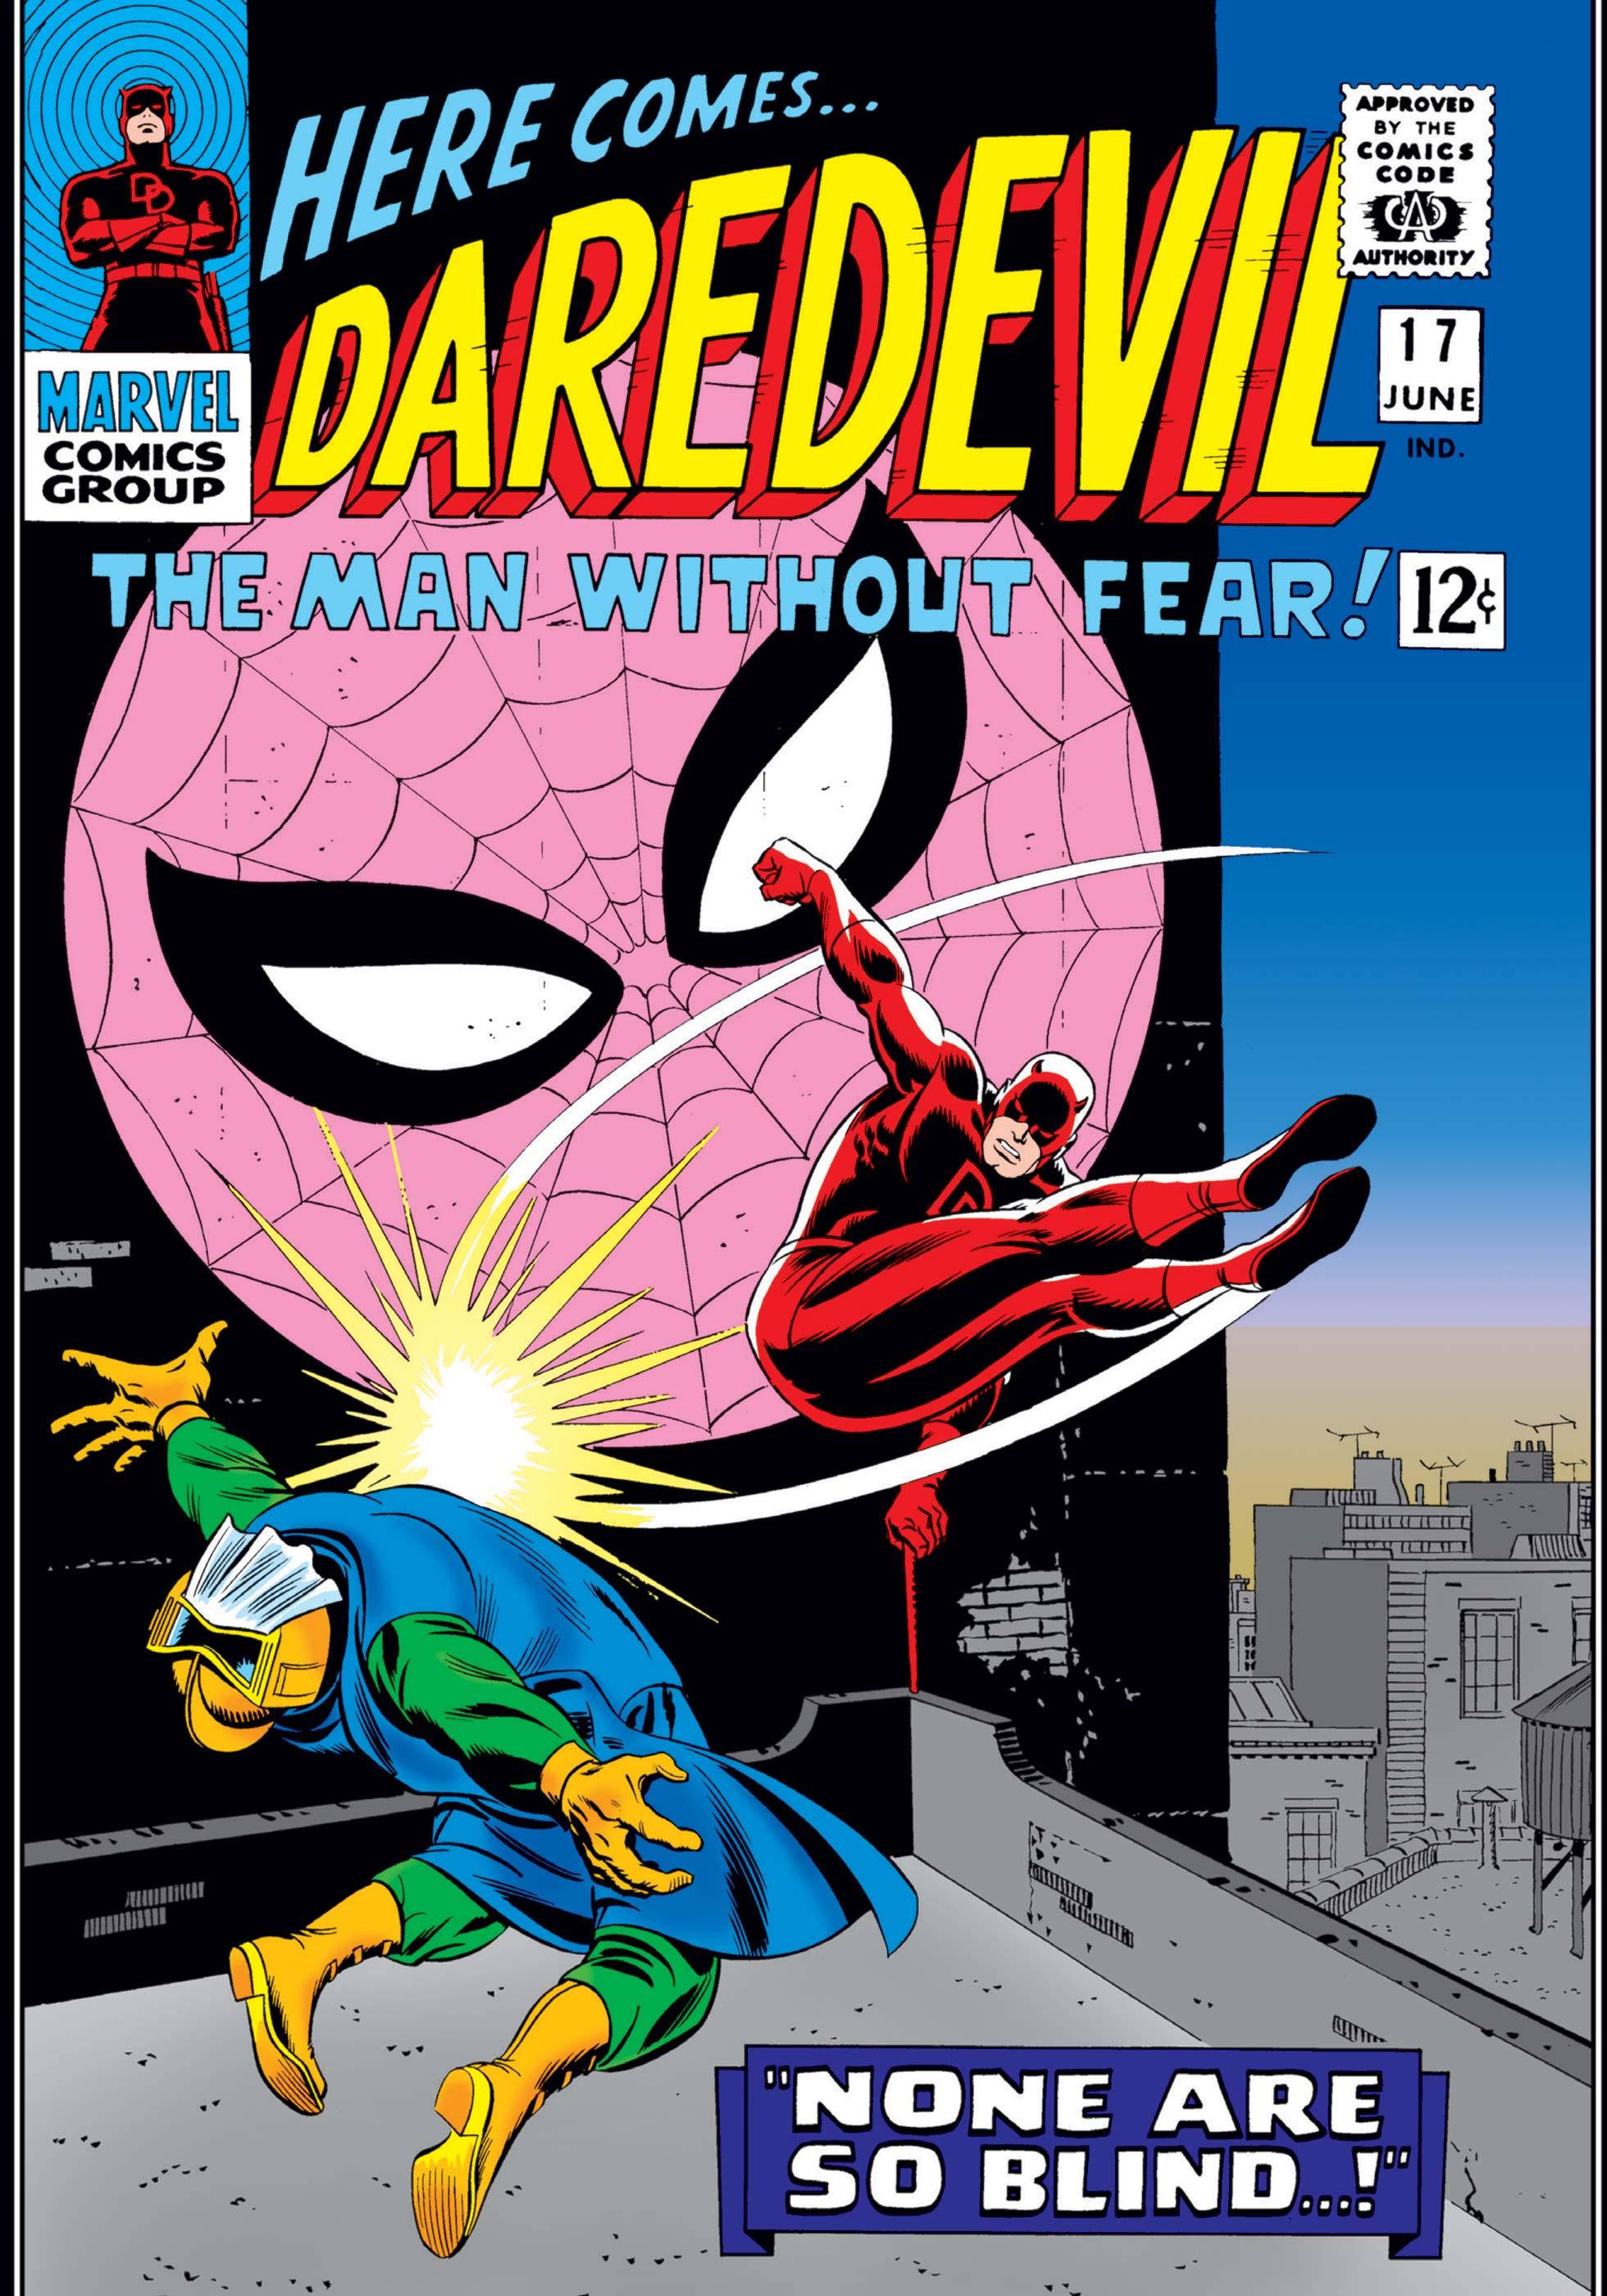 Daredevil (1964) #17